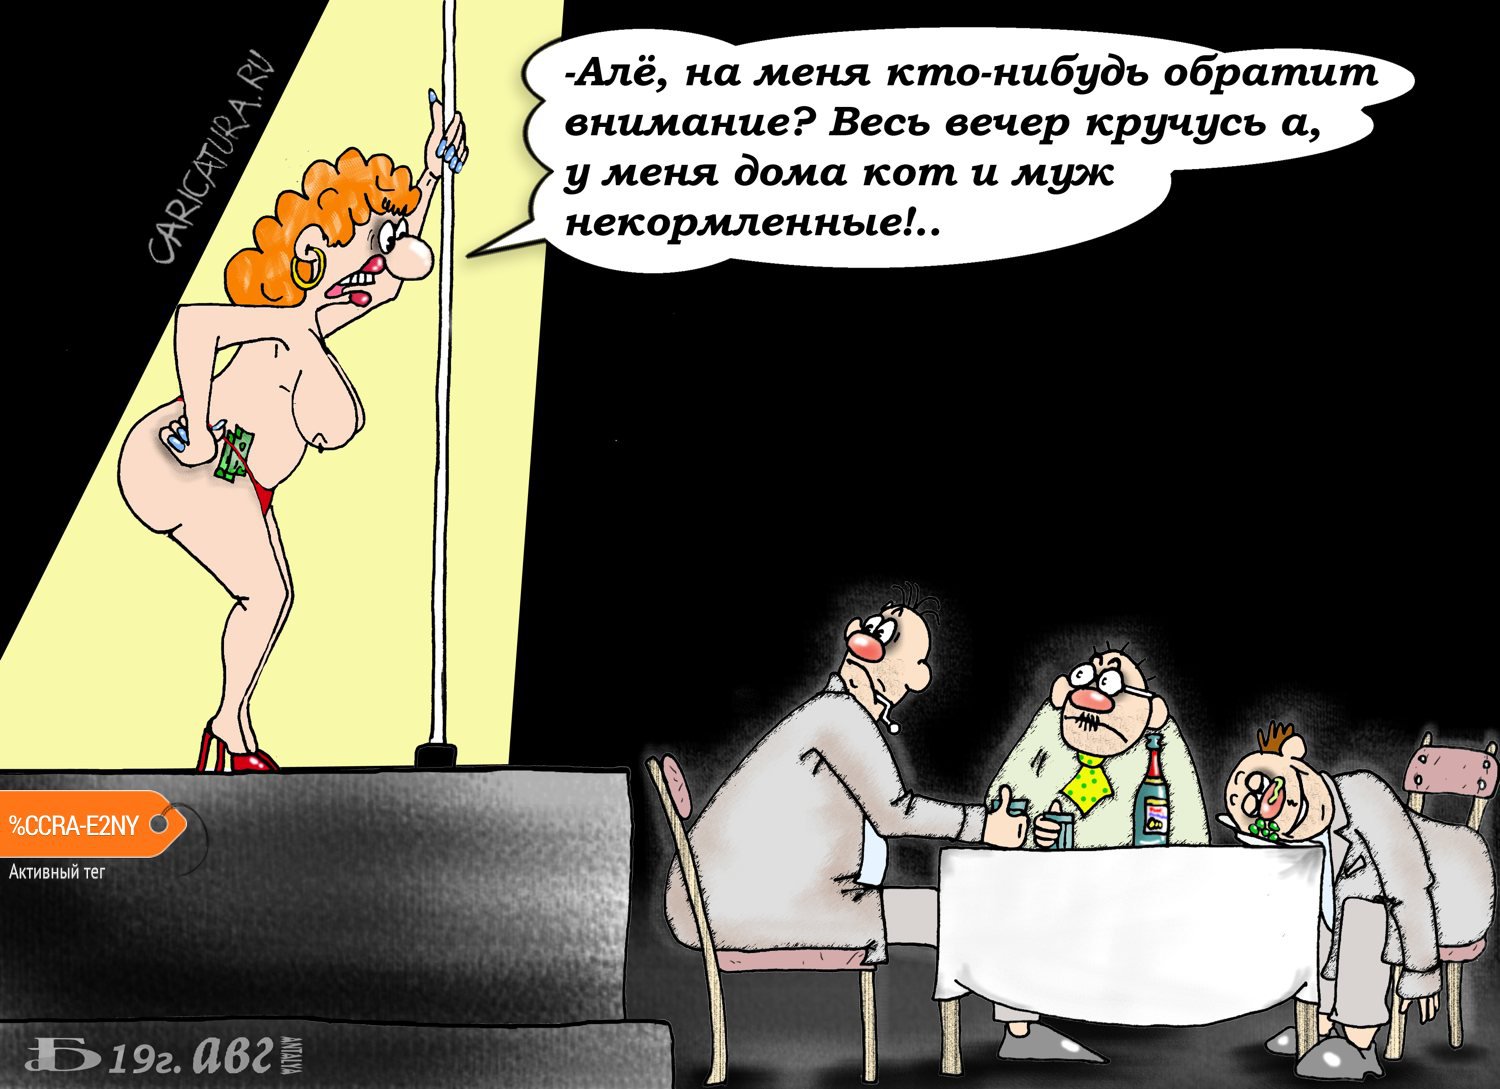 Карикатура "Про кота и мужа", Борис Демин